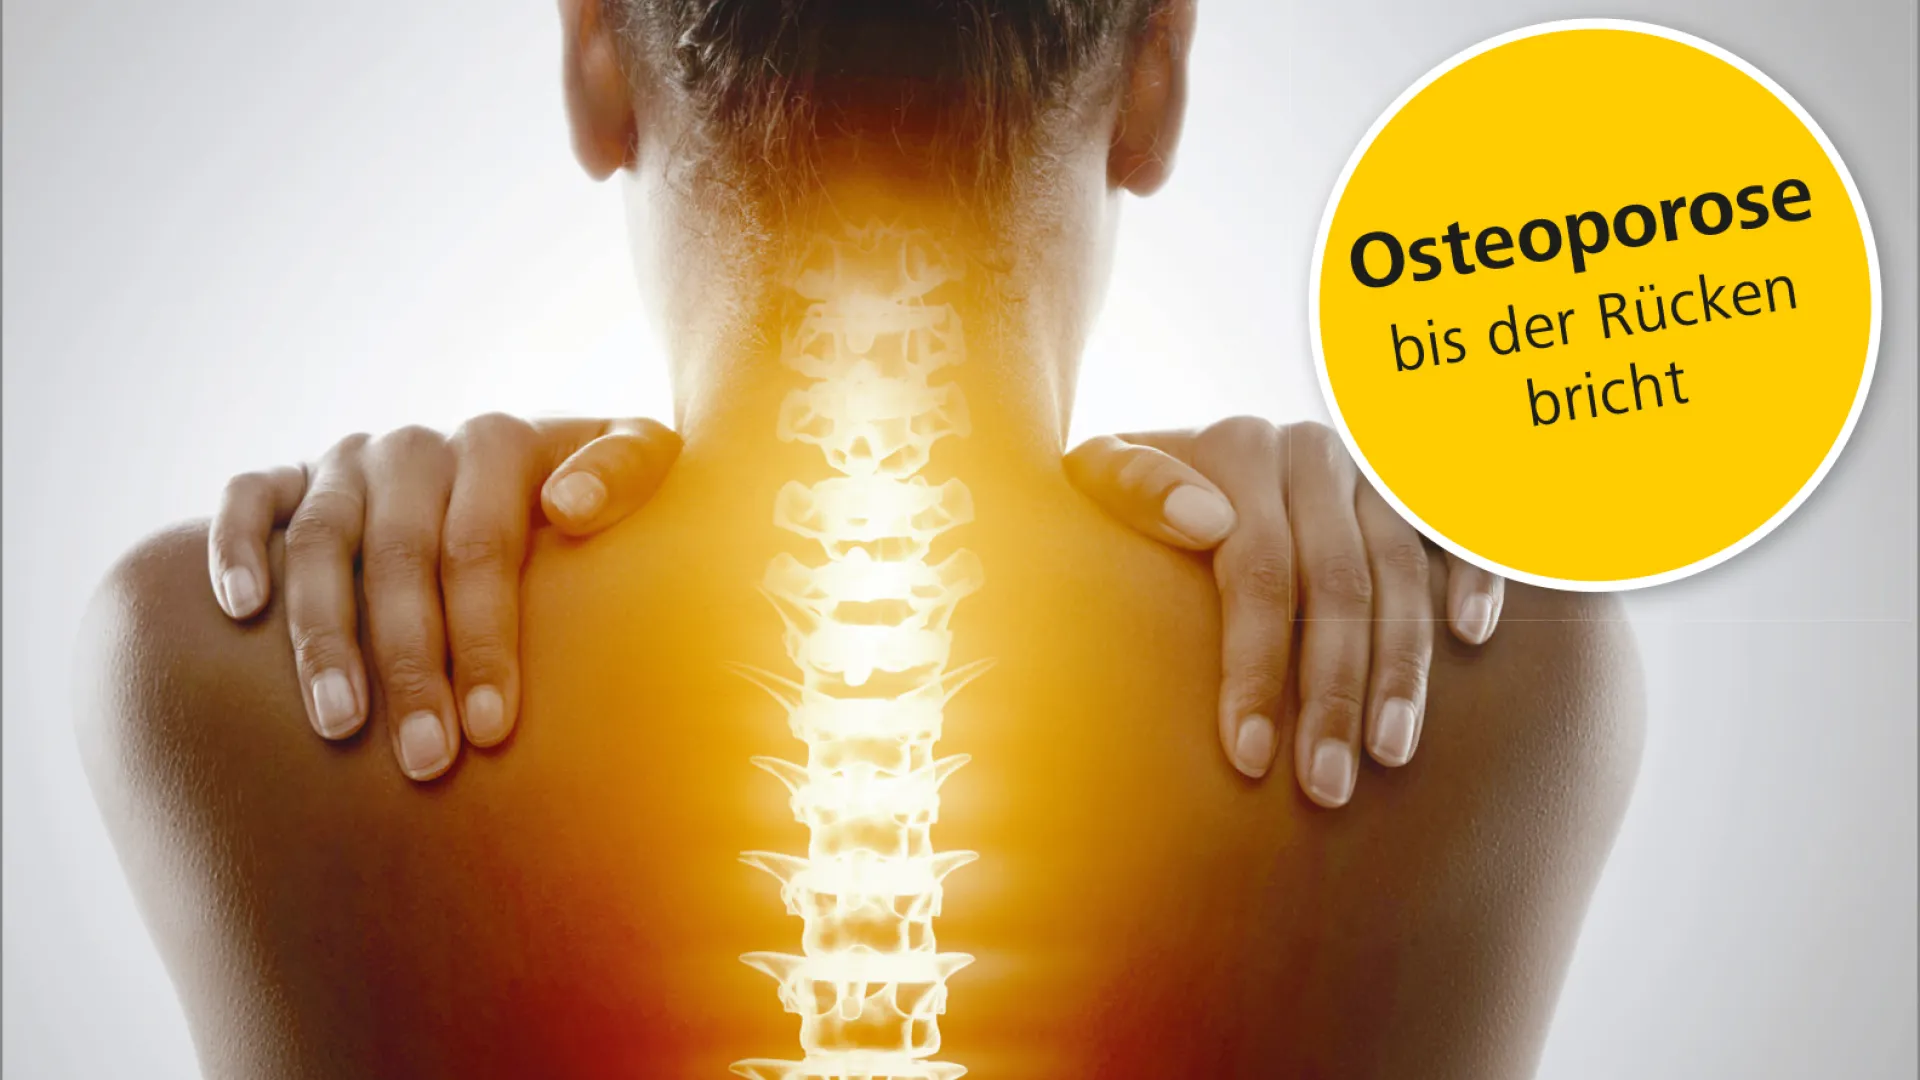 Rückenforum "Osteoporose: bis der Rücken bricht": Schweizer Paraplegiker Zentrum am 18. März 2020